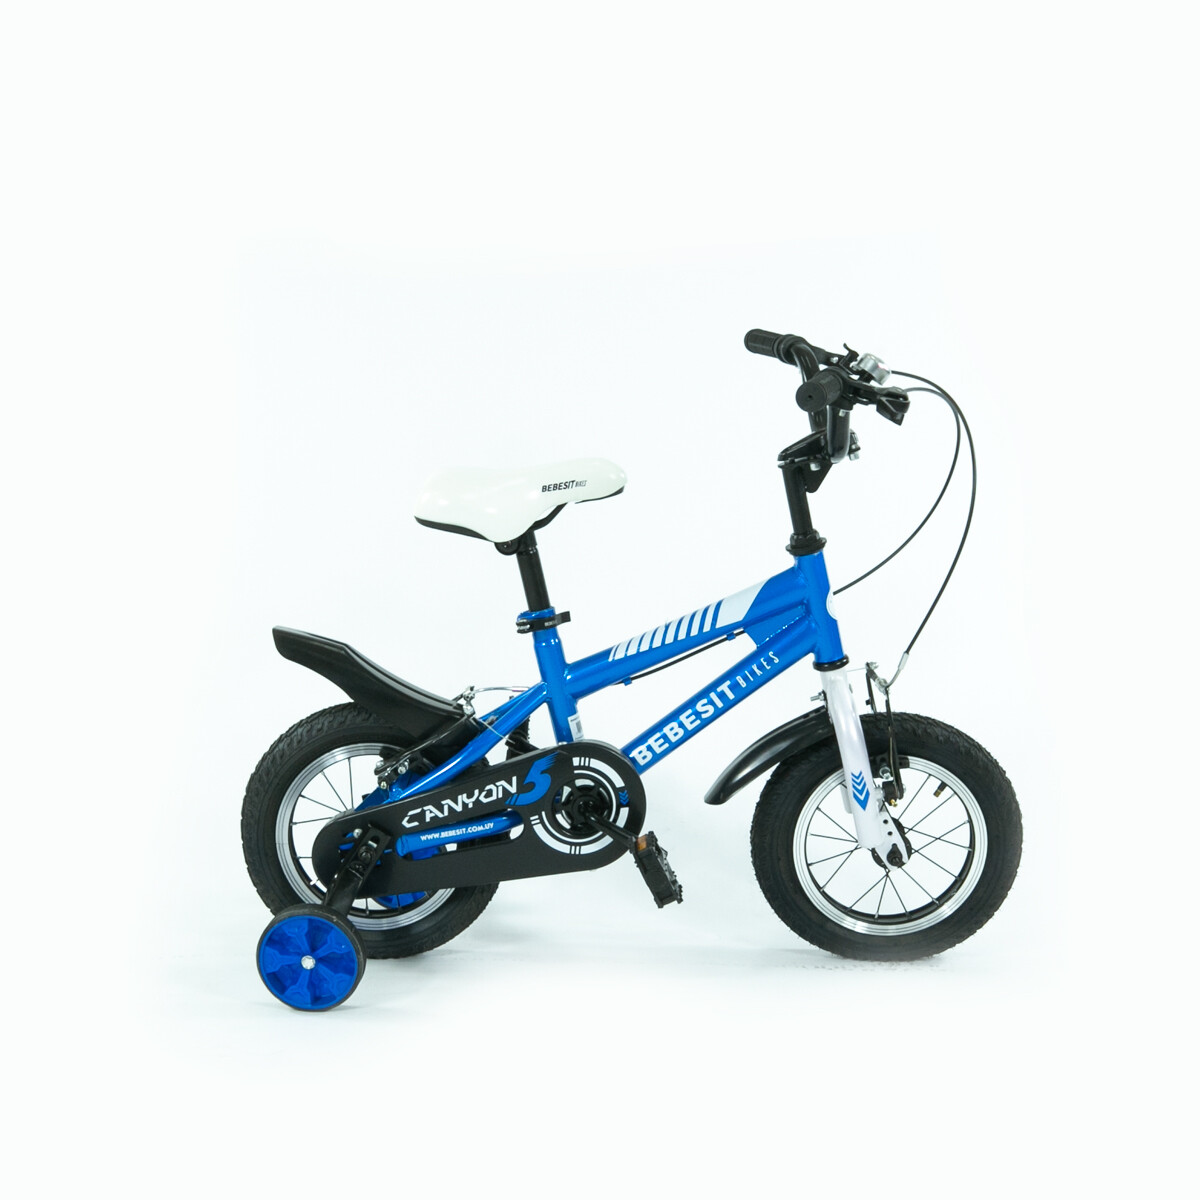 Bebesit Bicicleta Canyon rodado 12- azul 